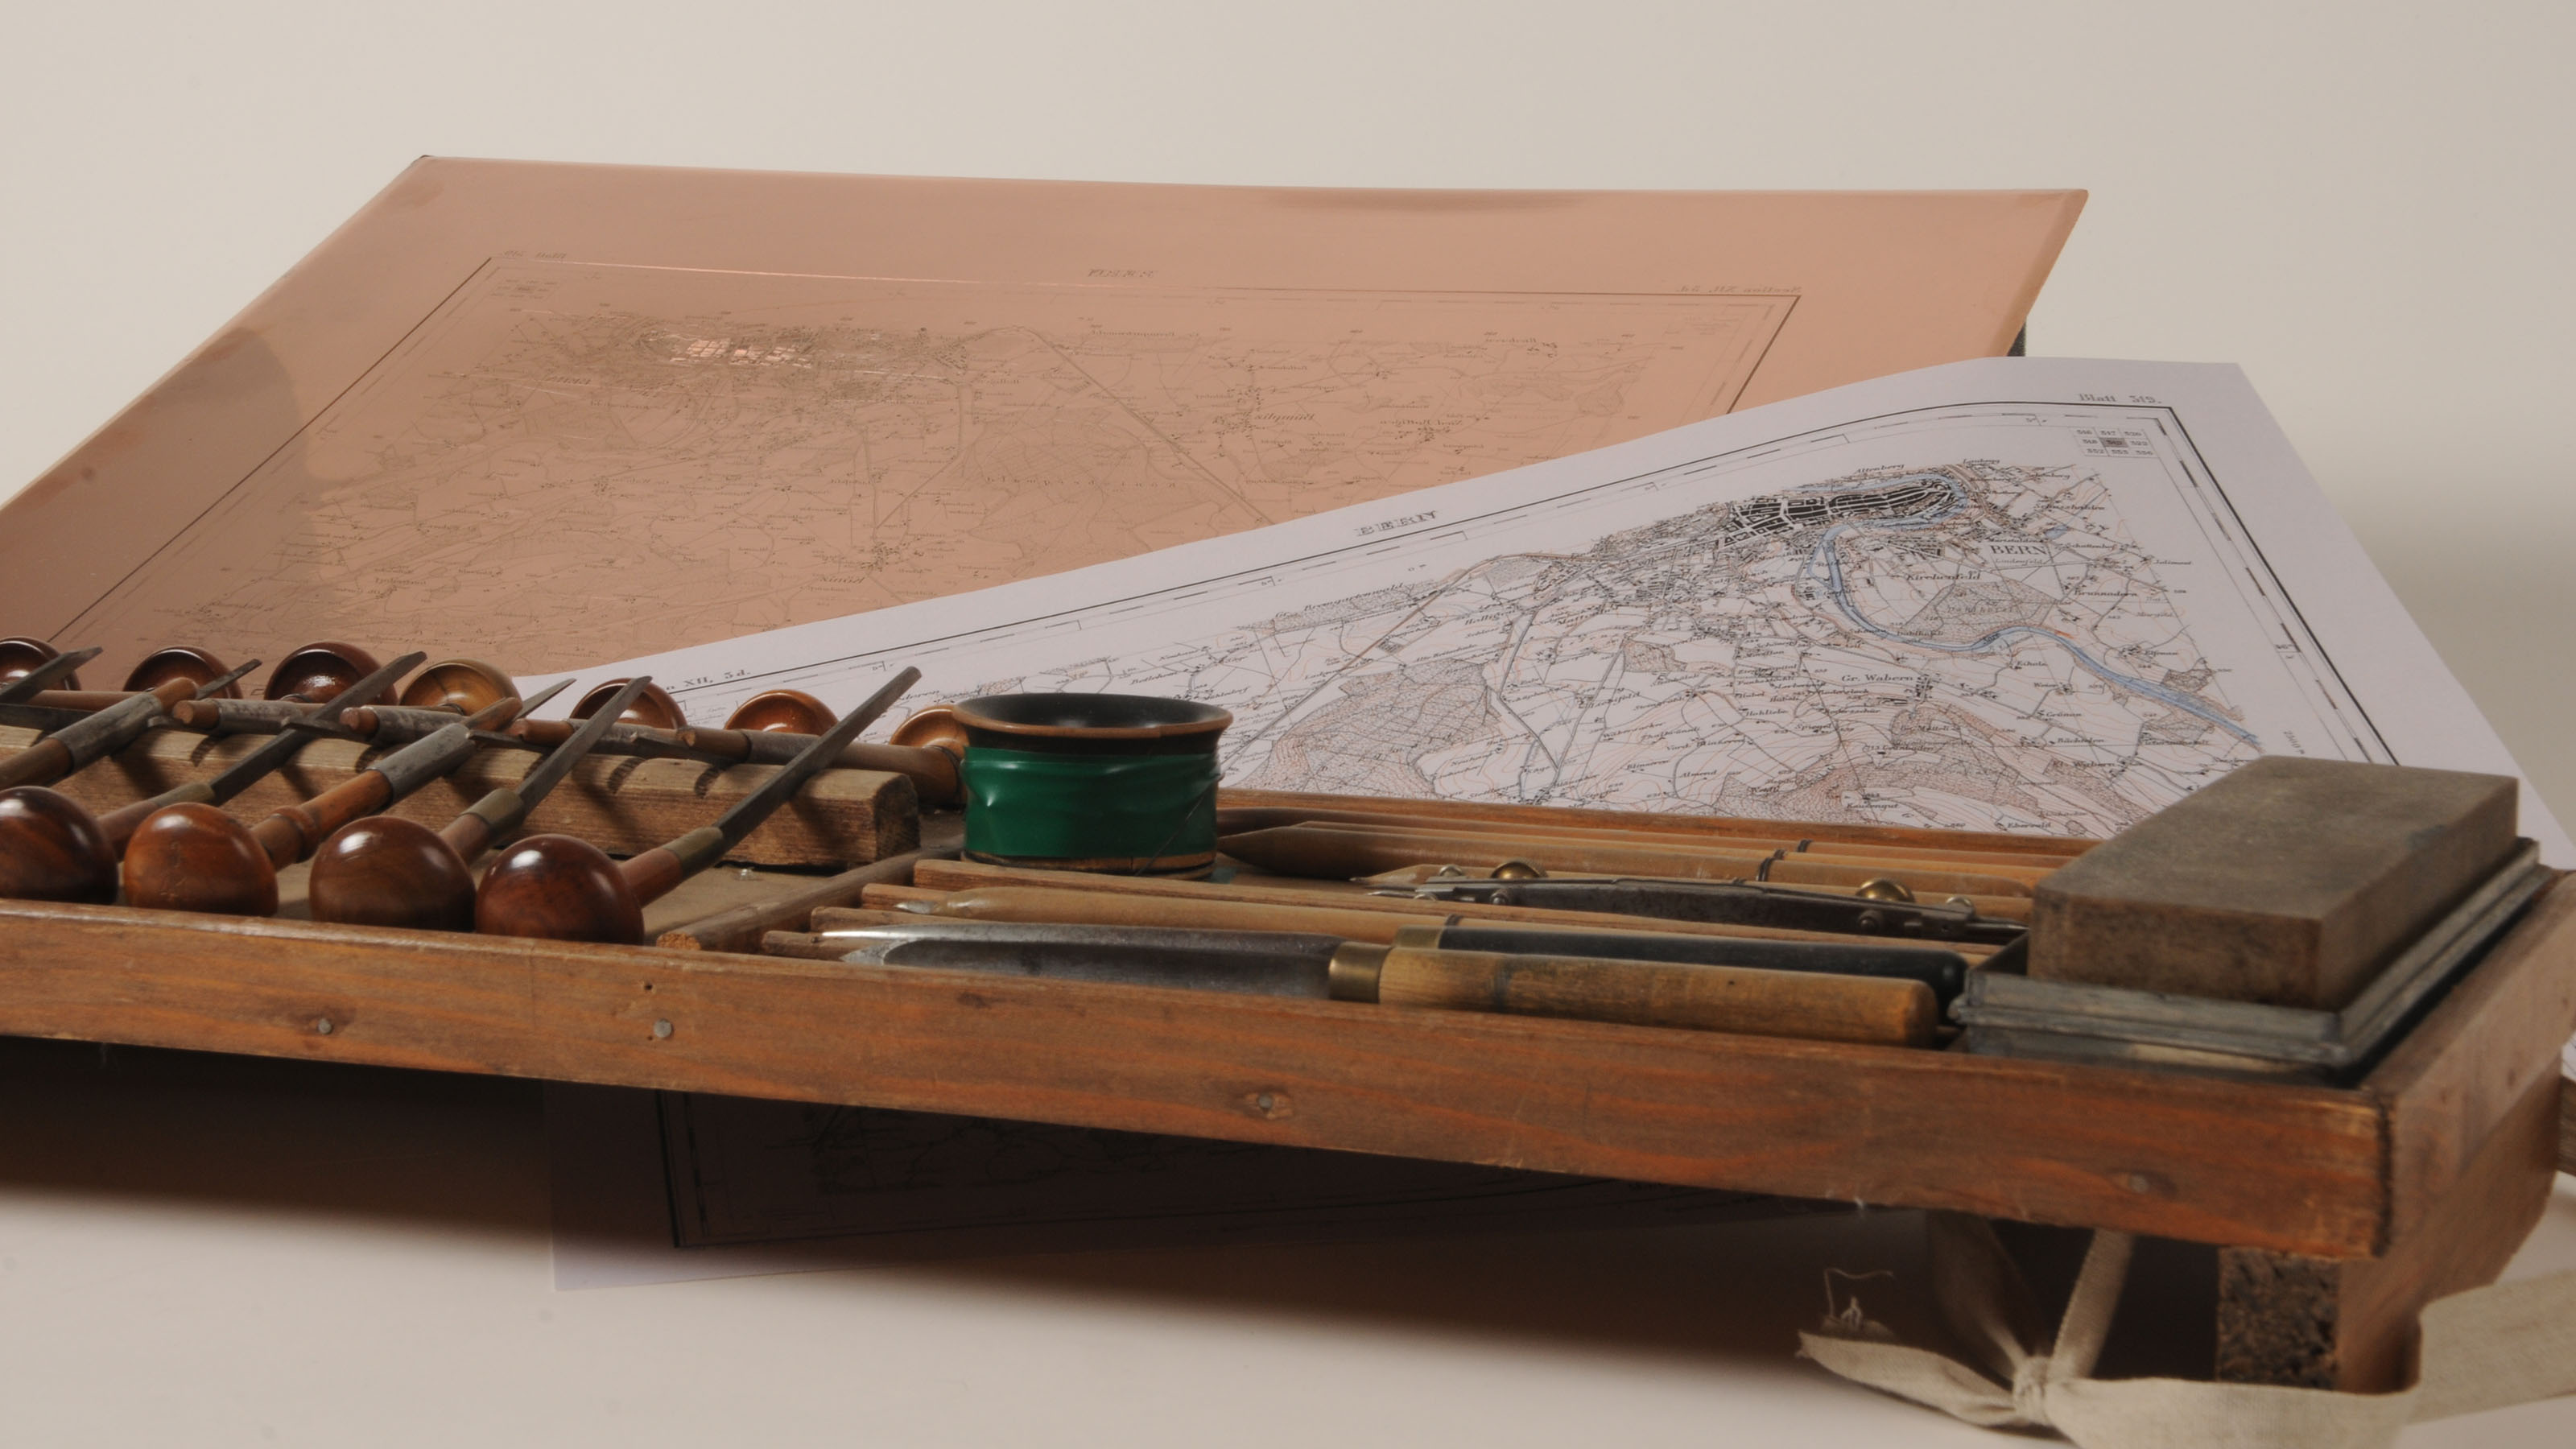 Photographie du marteau, du poinçon et d'autres outils de la gravure sur cuivre.